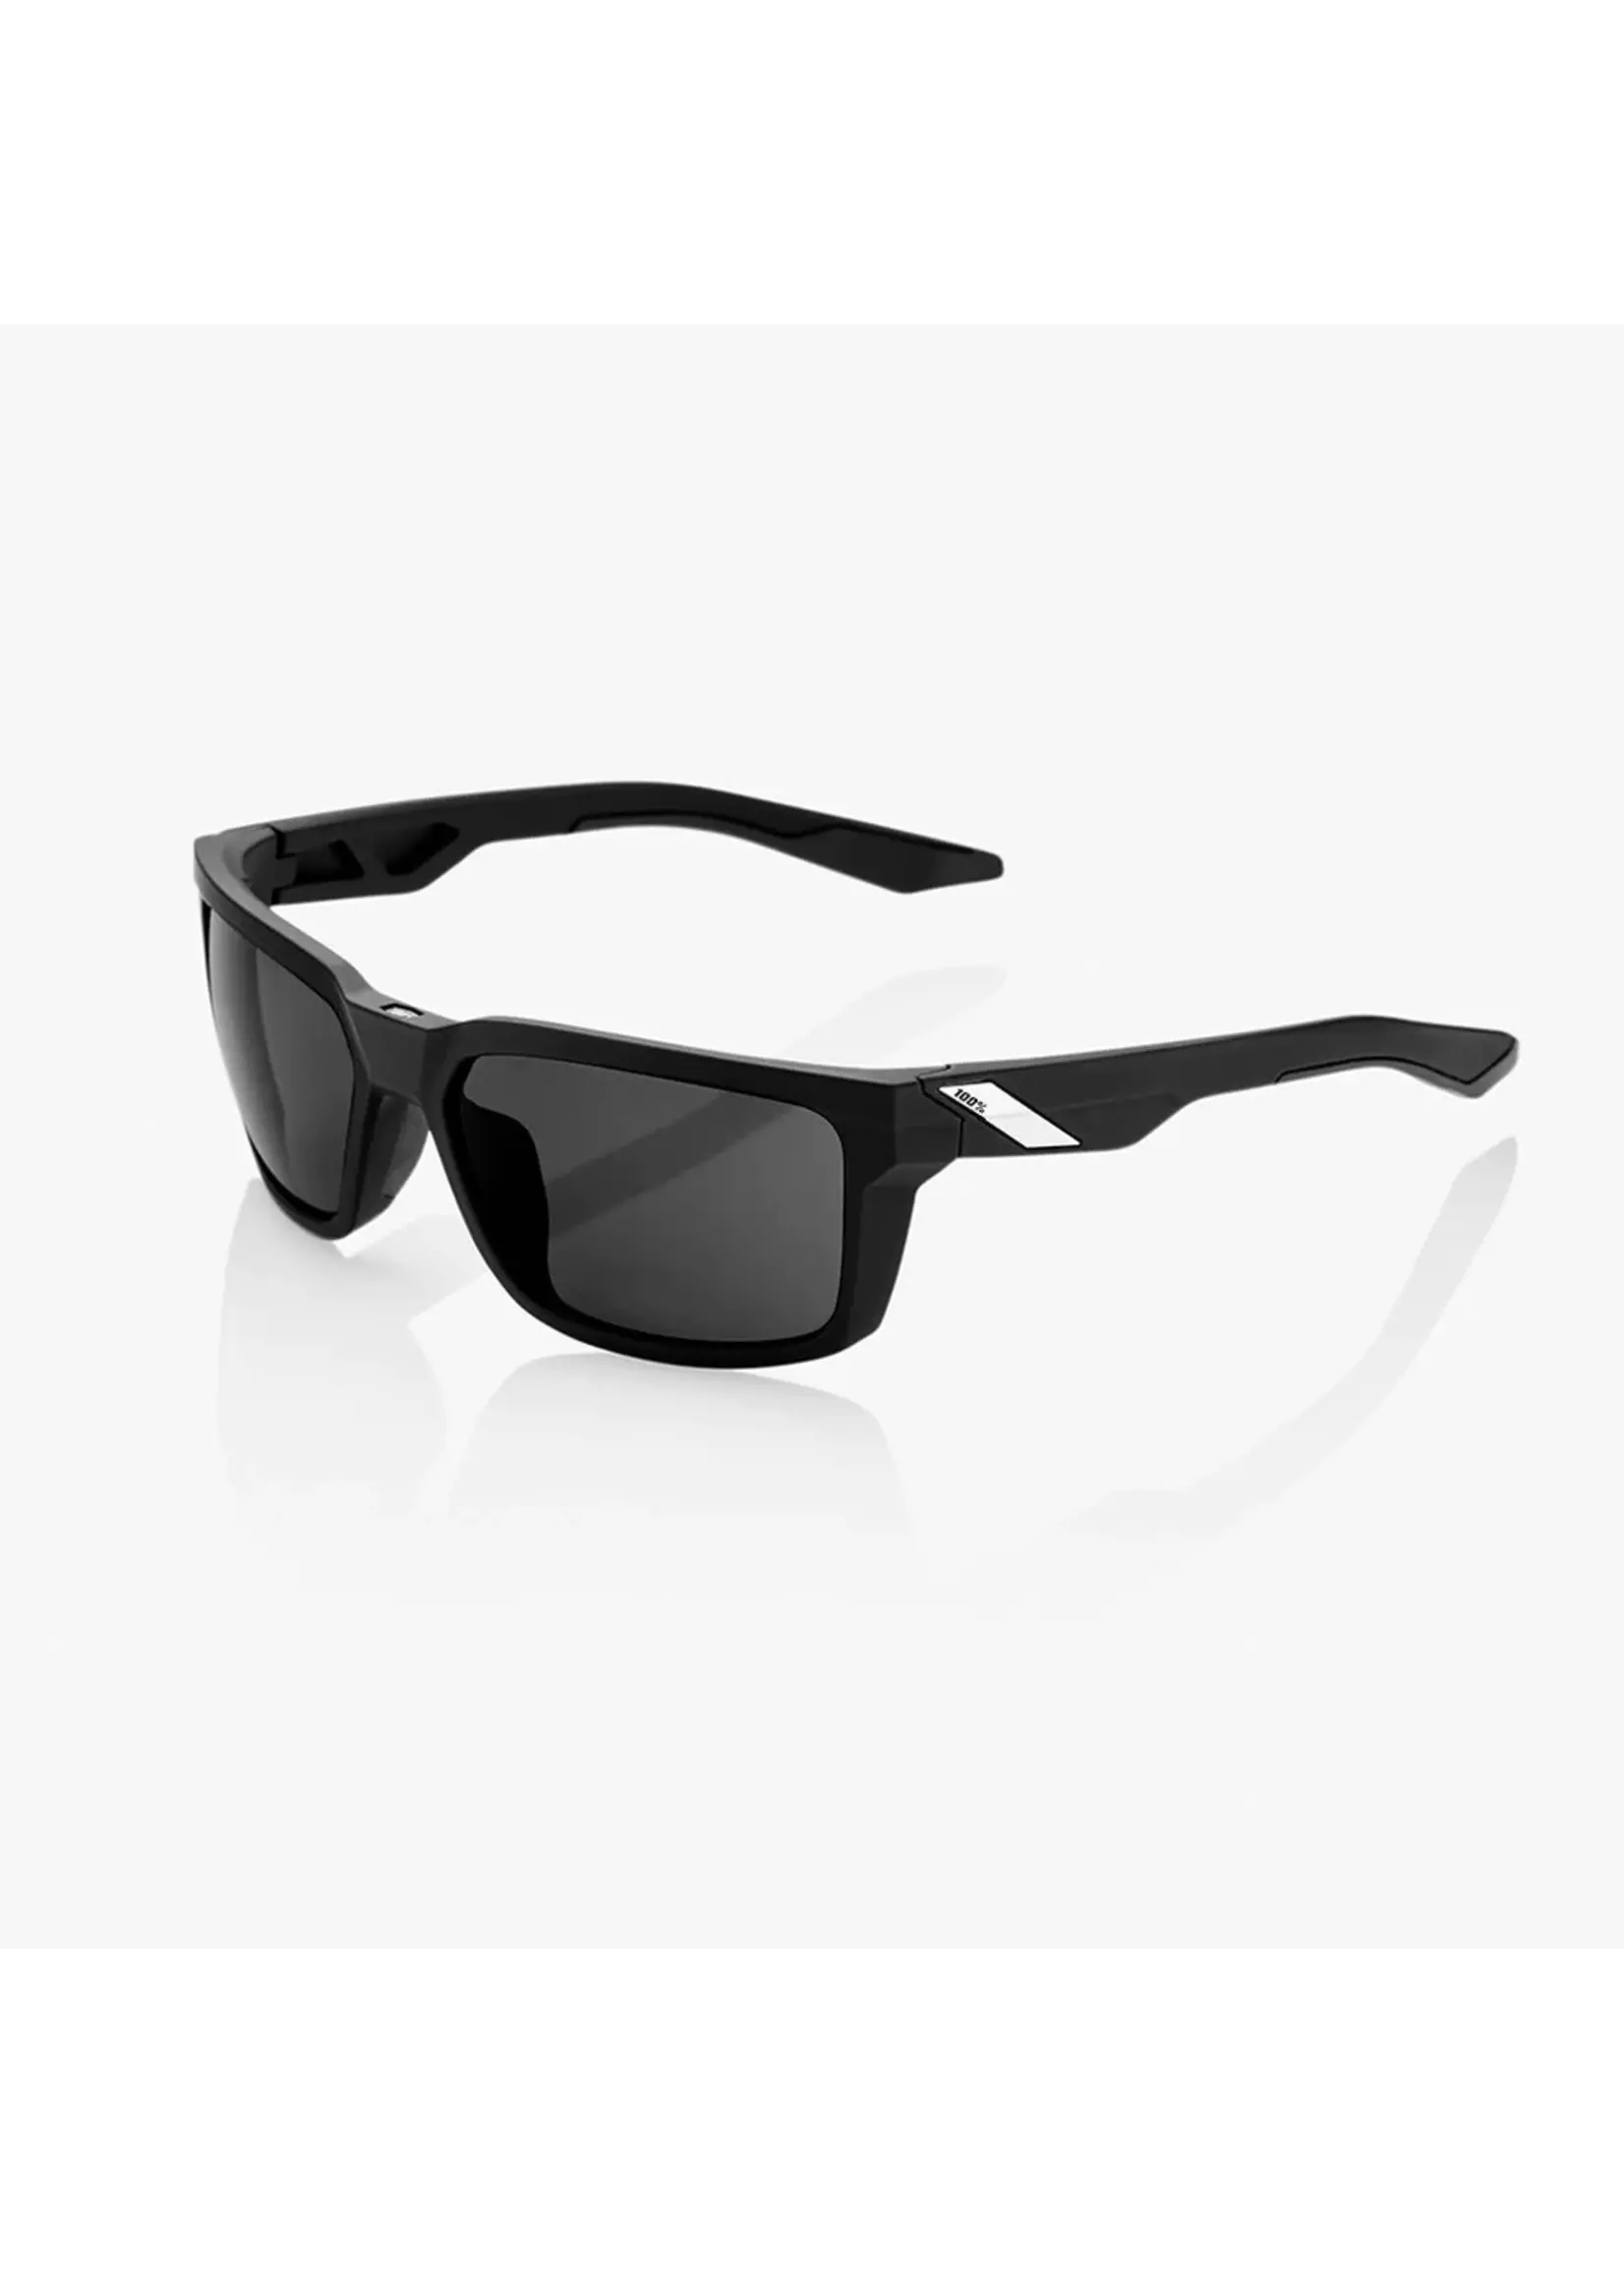 100 Percent 100% Daze Sunglasses, Soft Tact Black frame - Smoke Lens